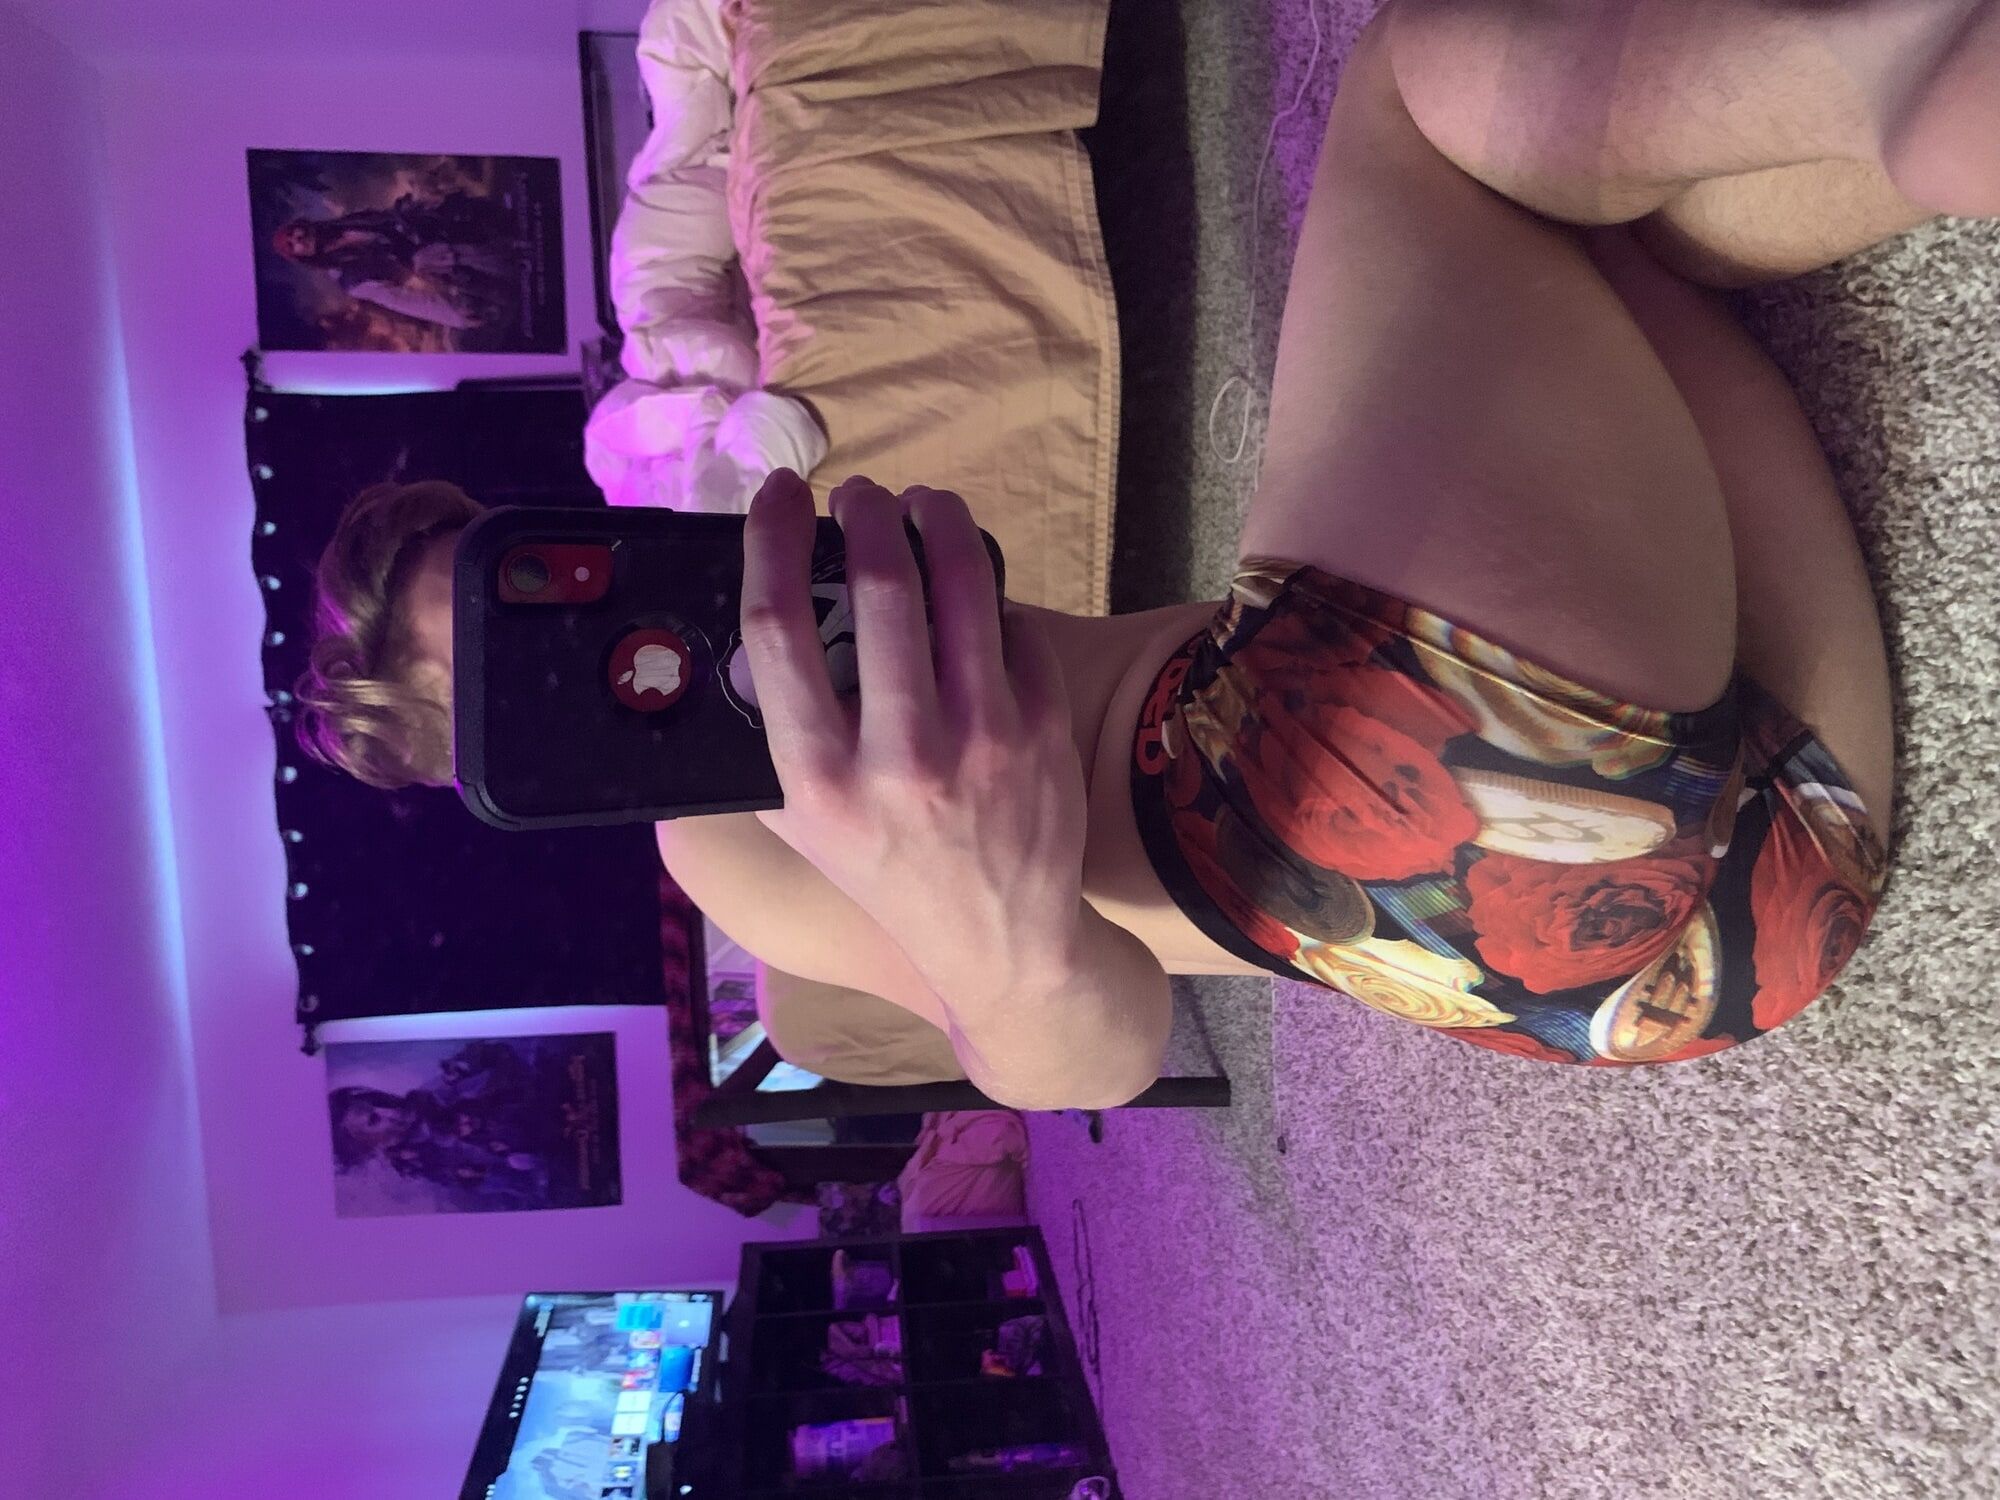 Young Femboy Virgin Ass Bedroom Selfies  #2